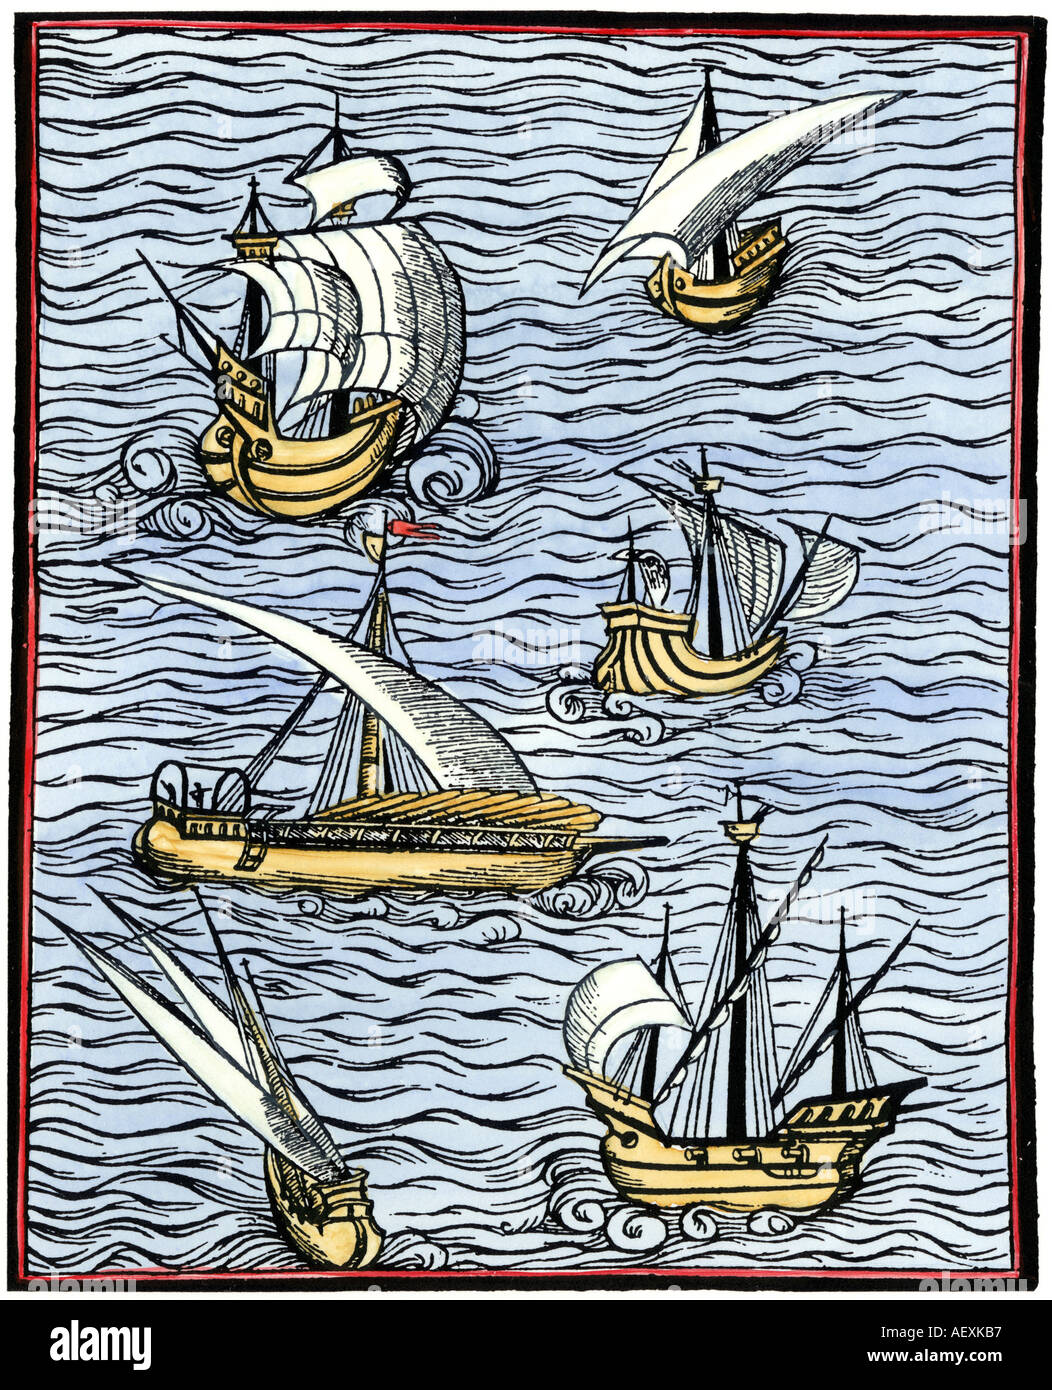 Caravelle da Libre de cololat tractat dels maritims fet 1502. Colorate a mano la xilografia Foto Stock